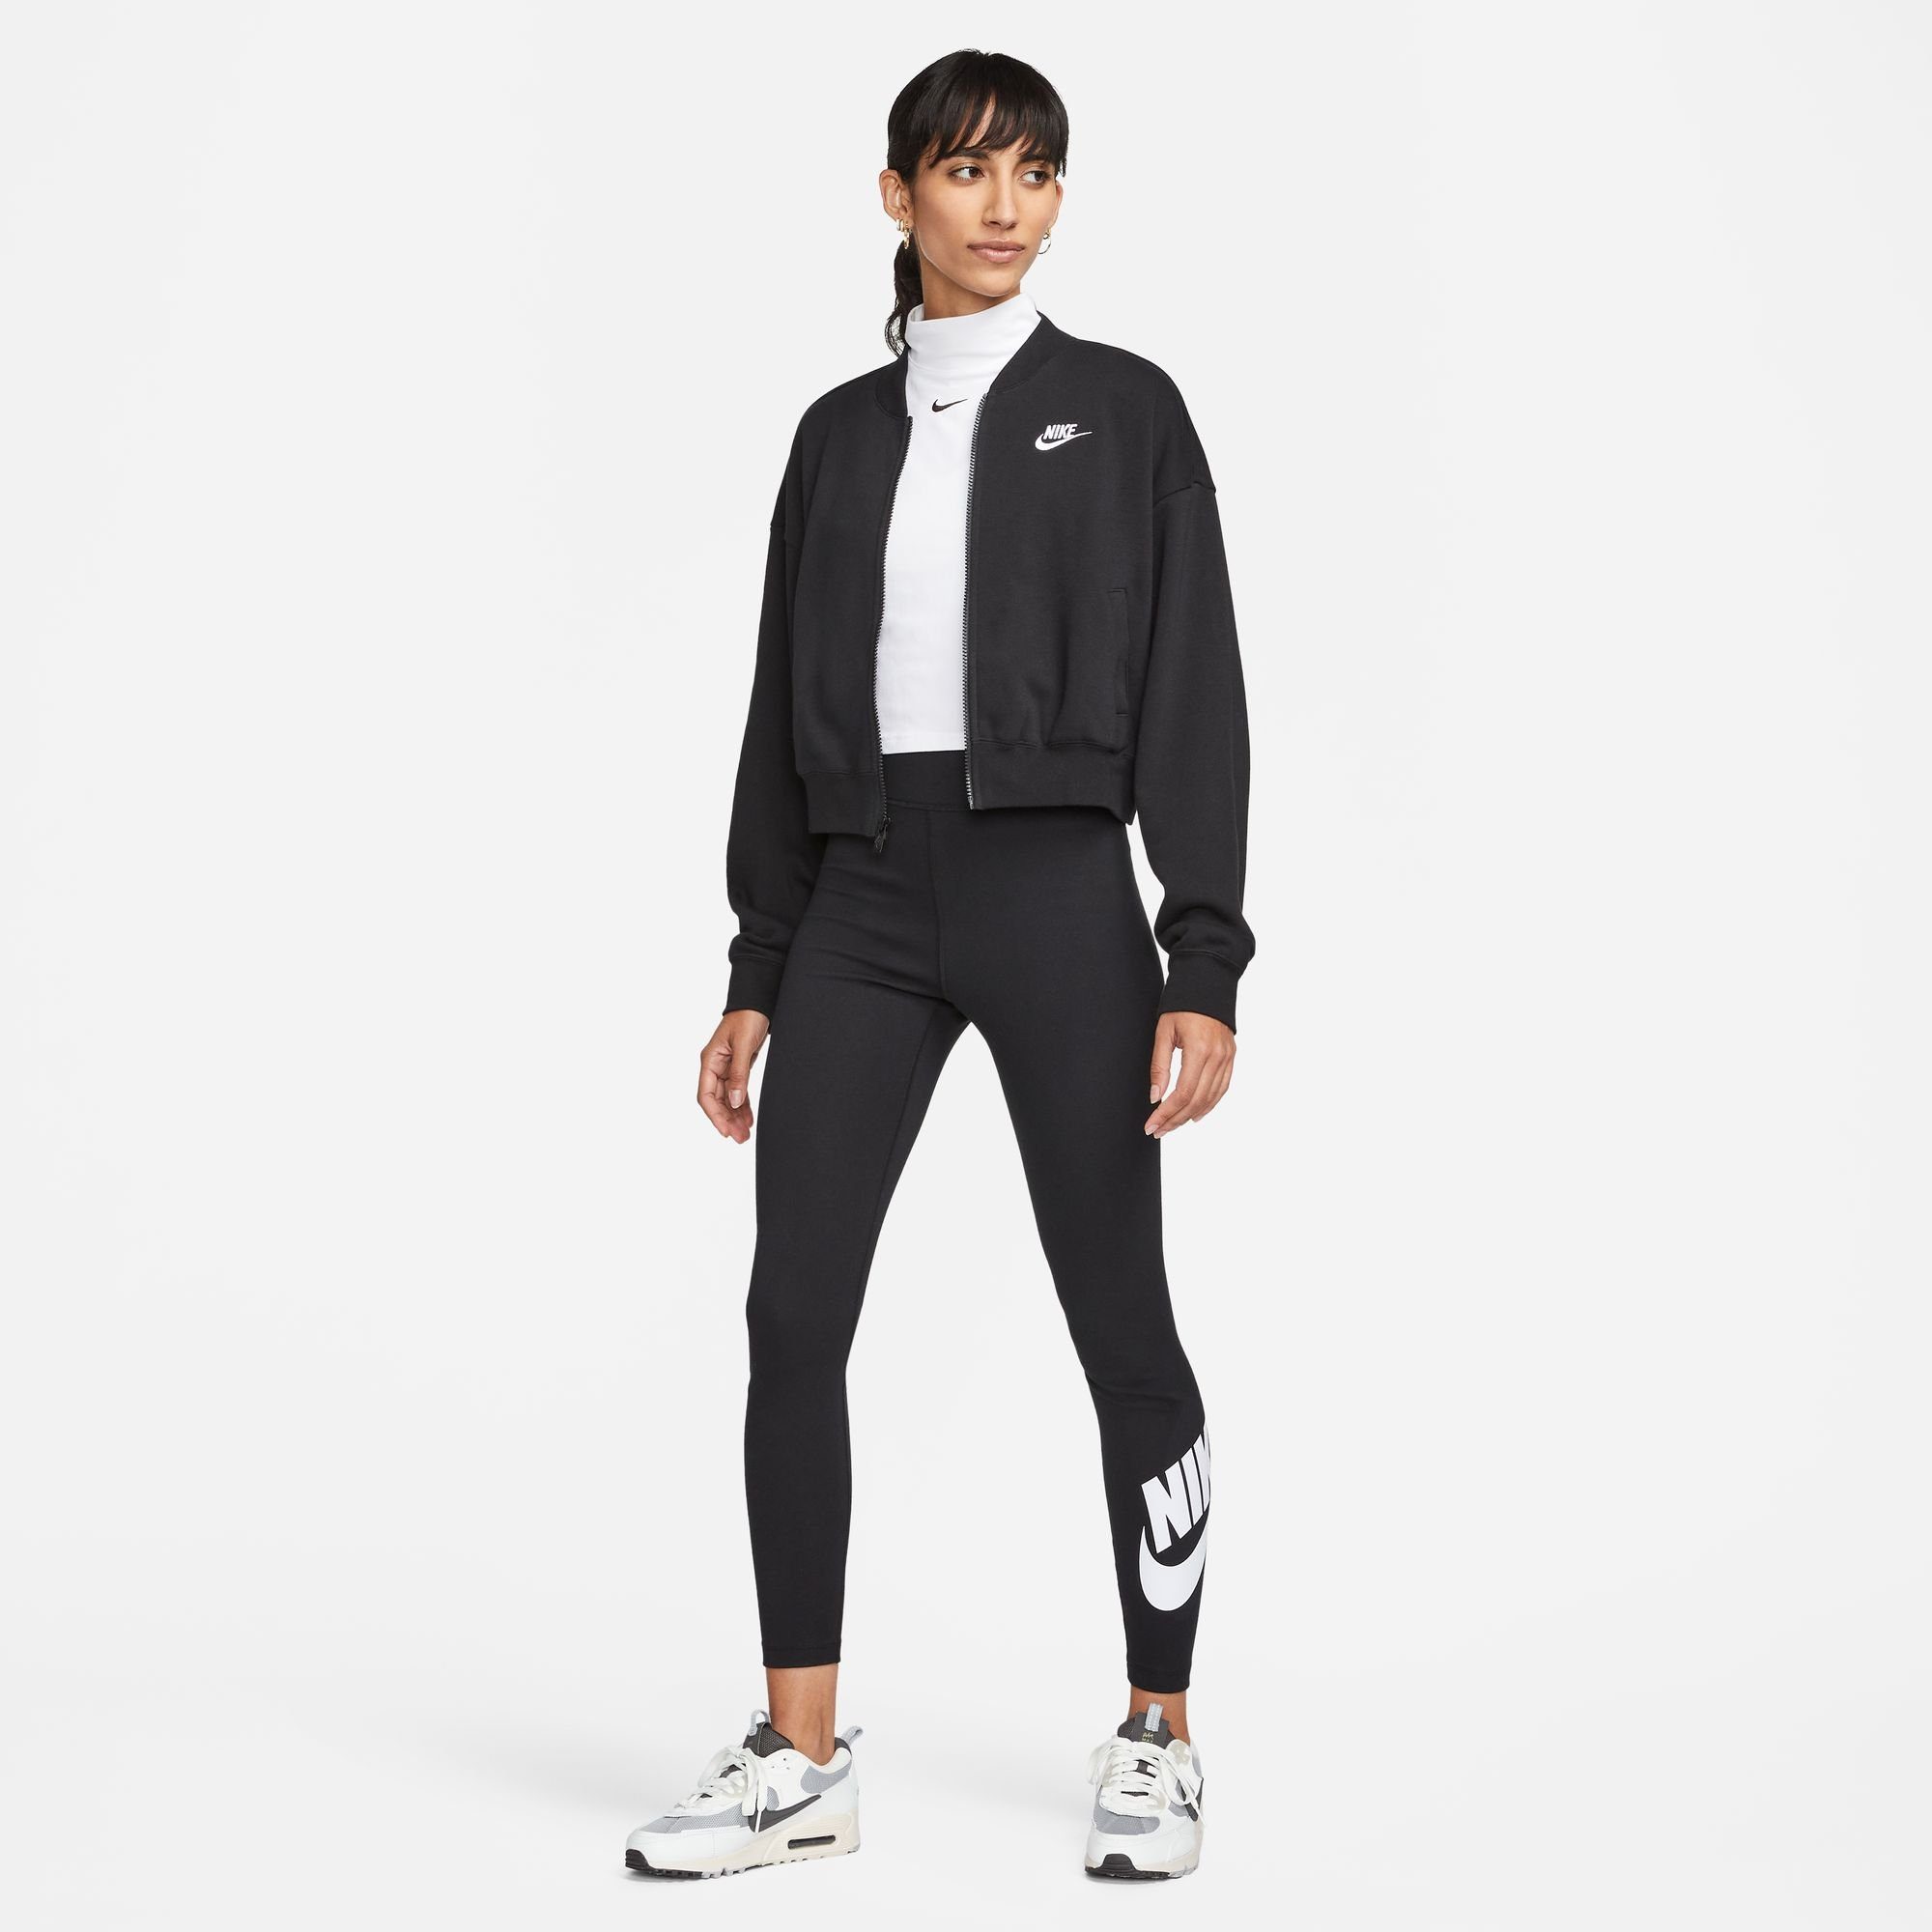 CROPPED FLEECE CLUB BLACK/WHITE Sweatjacke FULL-ZIP JACKET Nike OVERSIZED Sportswear WOMEN'S